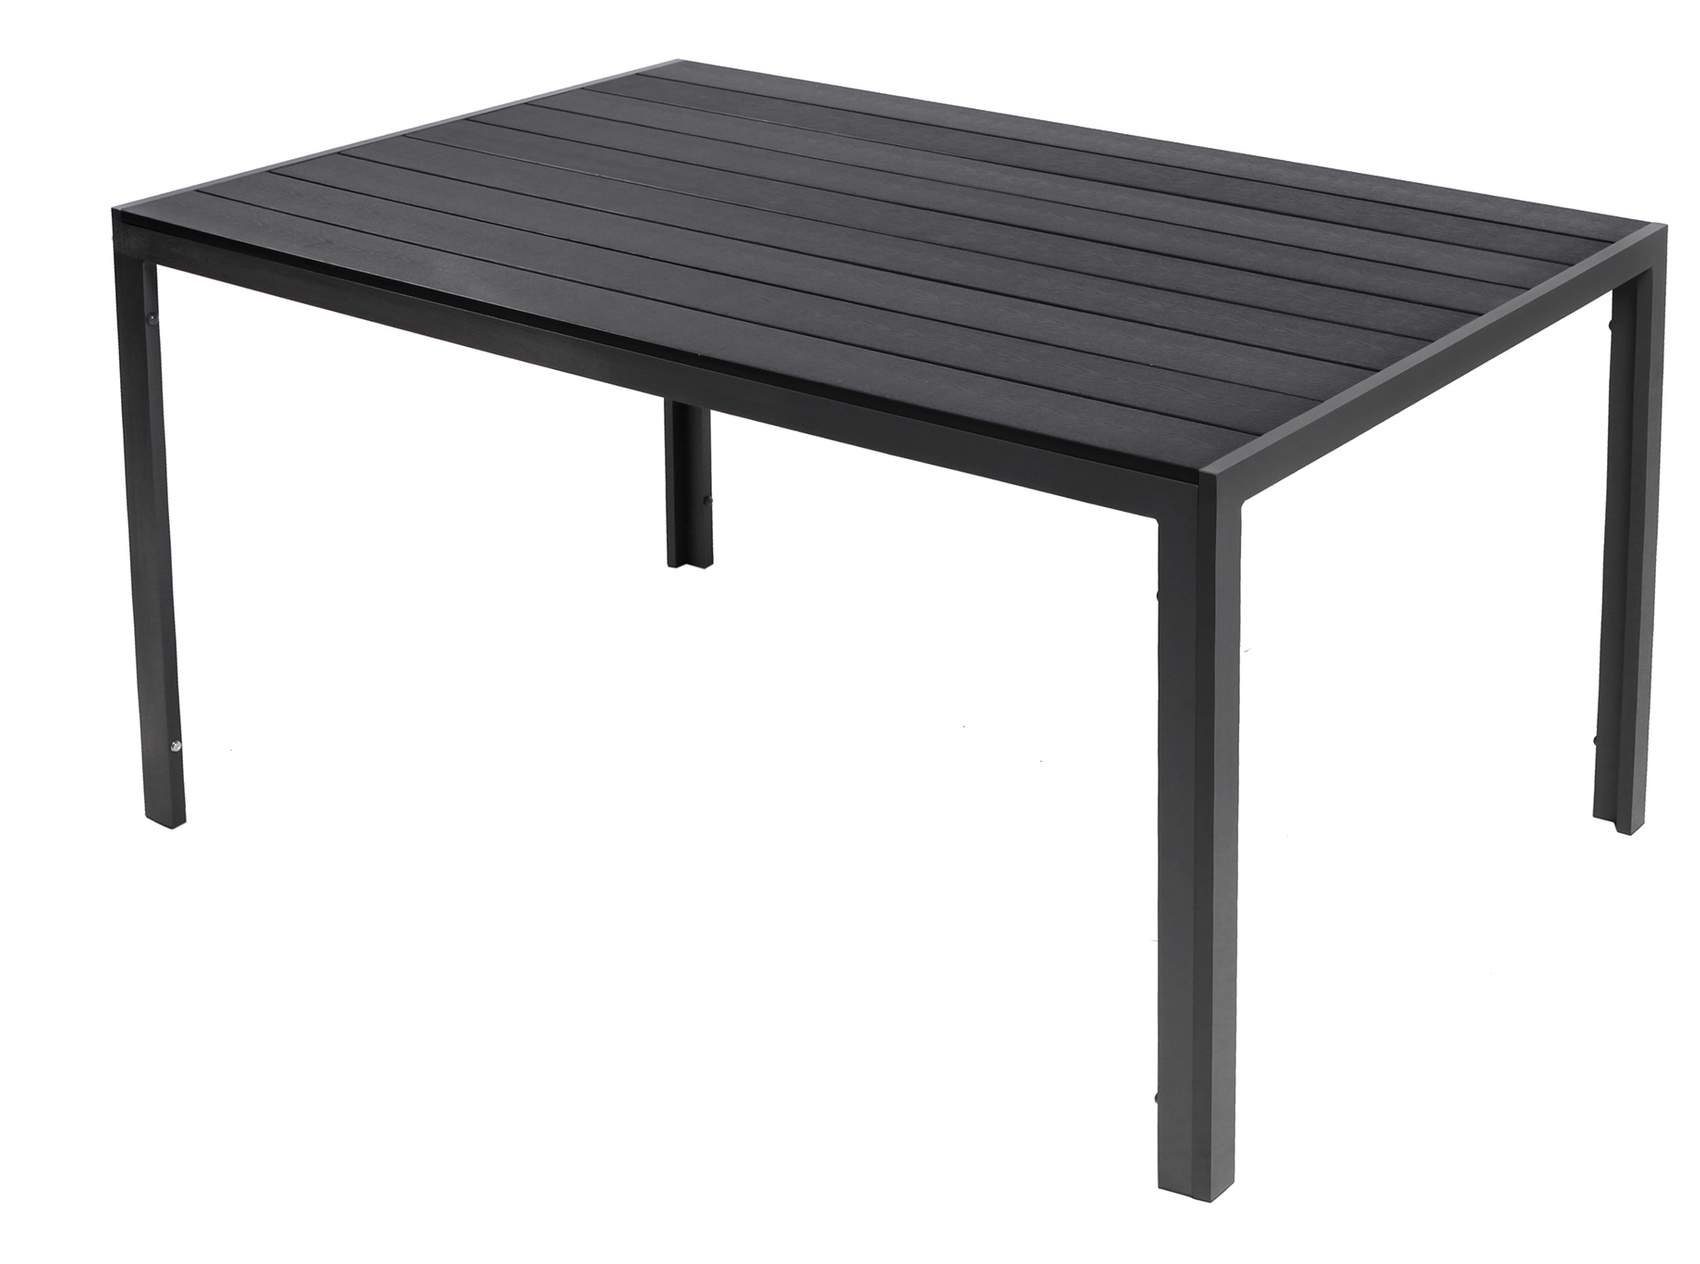 Trendmöbel24 Gartentisch Gartentisch Comfort 180 x 90 cm mit Nonwood Platte Gestell Aluminium